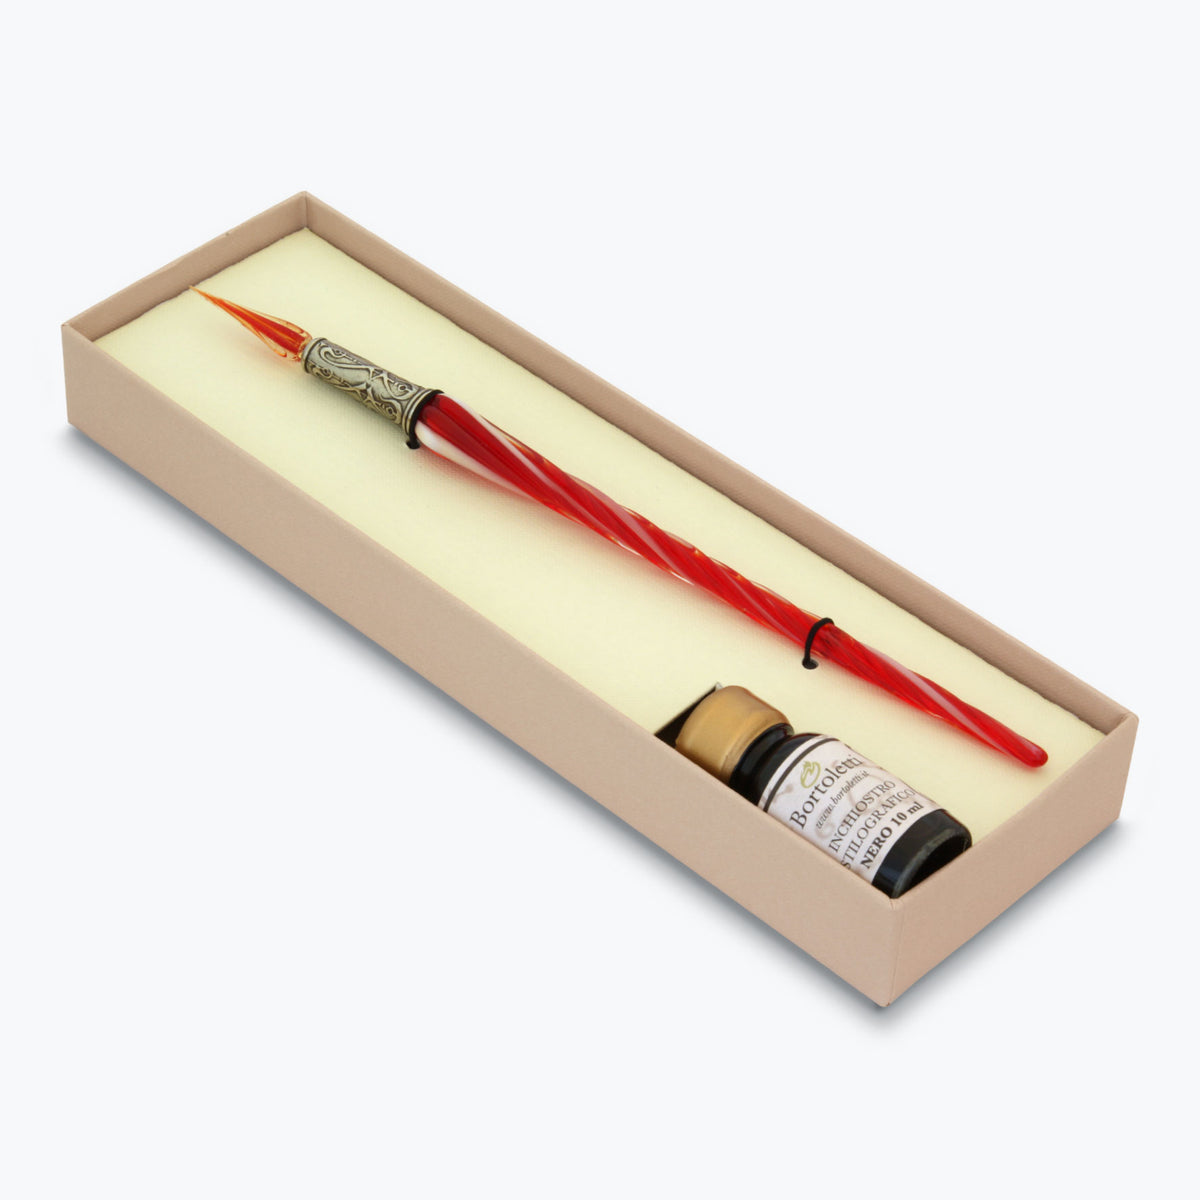 Bortoletti - Calligraphy Pen Set - Glass Nib - Twisted - Red